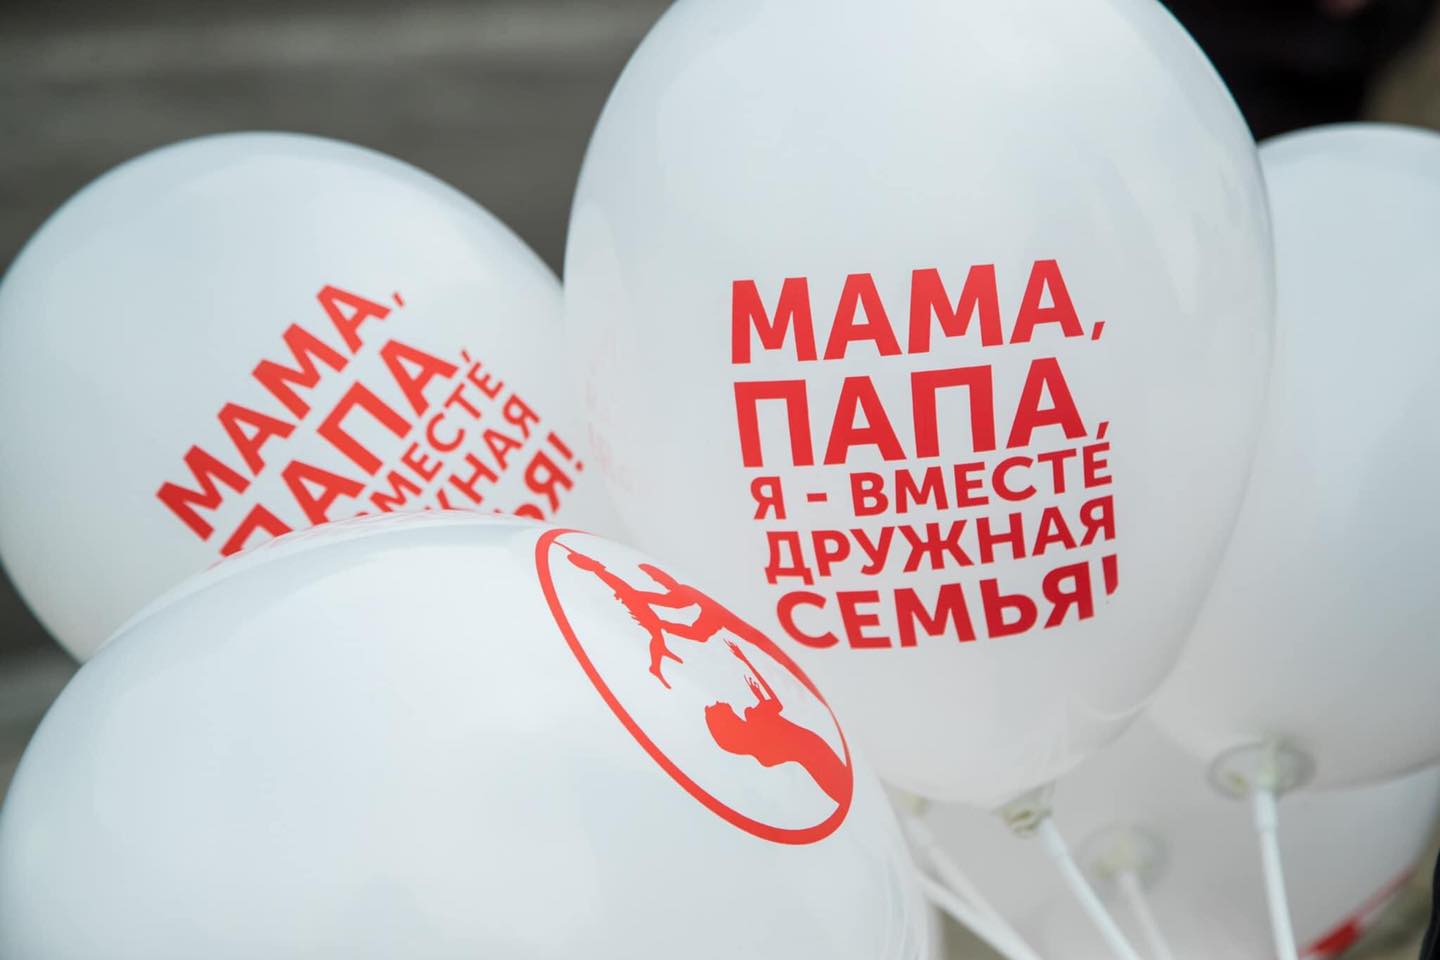 В Кишиневе прошел марш в поддержку традиционной семьи (ВИДЕО/ФОТО)